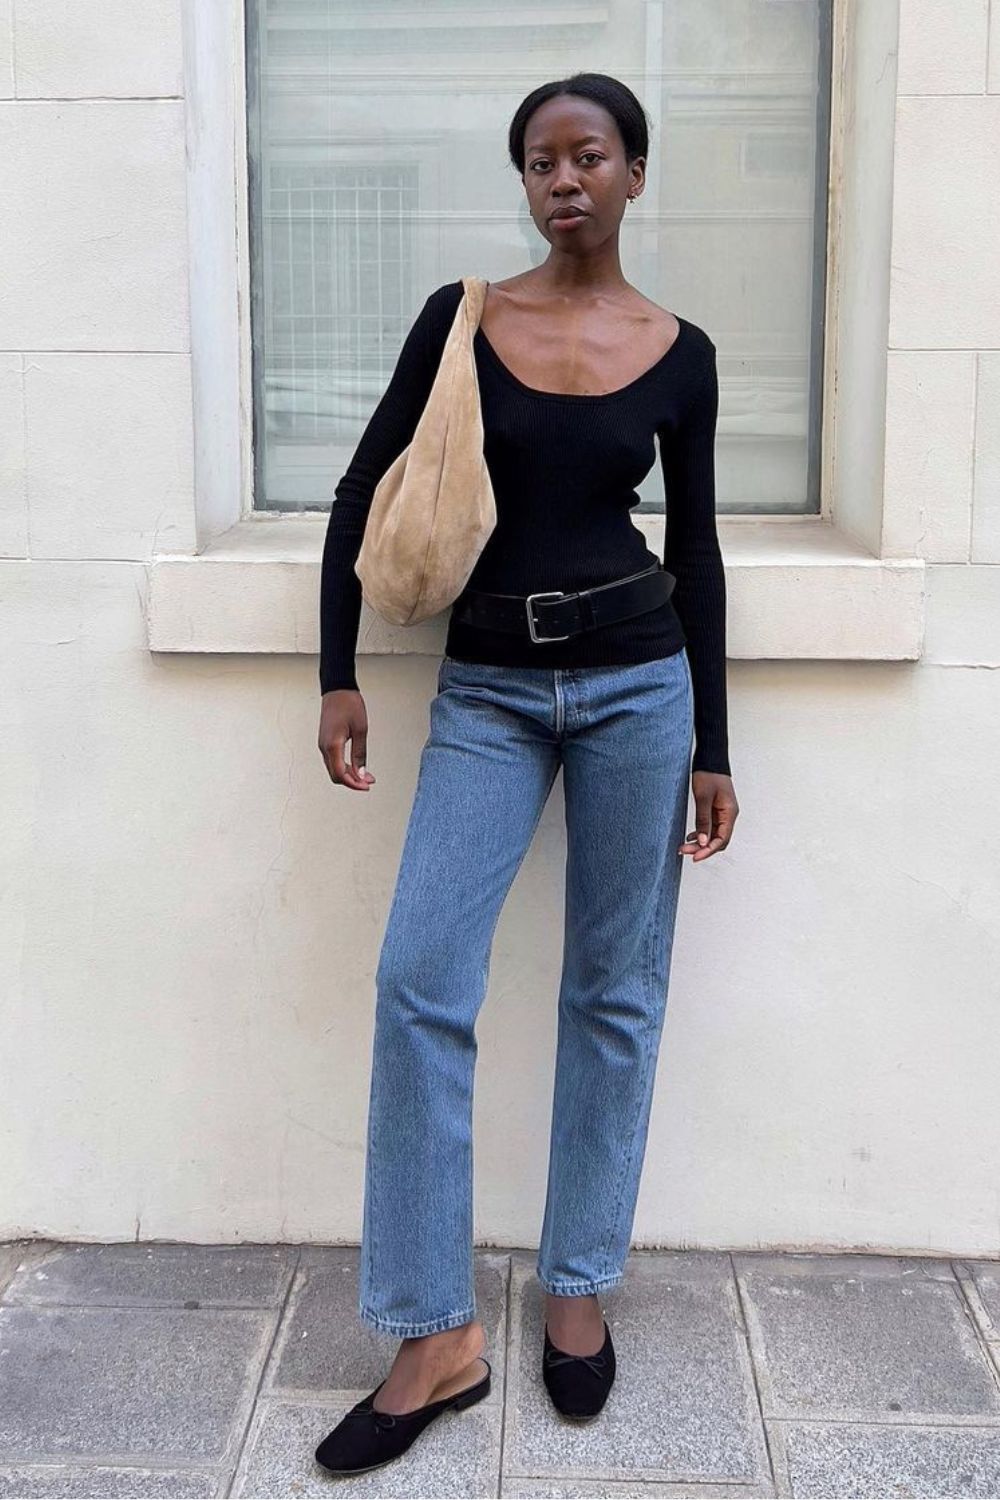 Calça jeans reta, blusa preta de manga com cinto preto marcando, maxi bolsa e flat mule preto